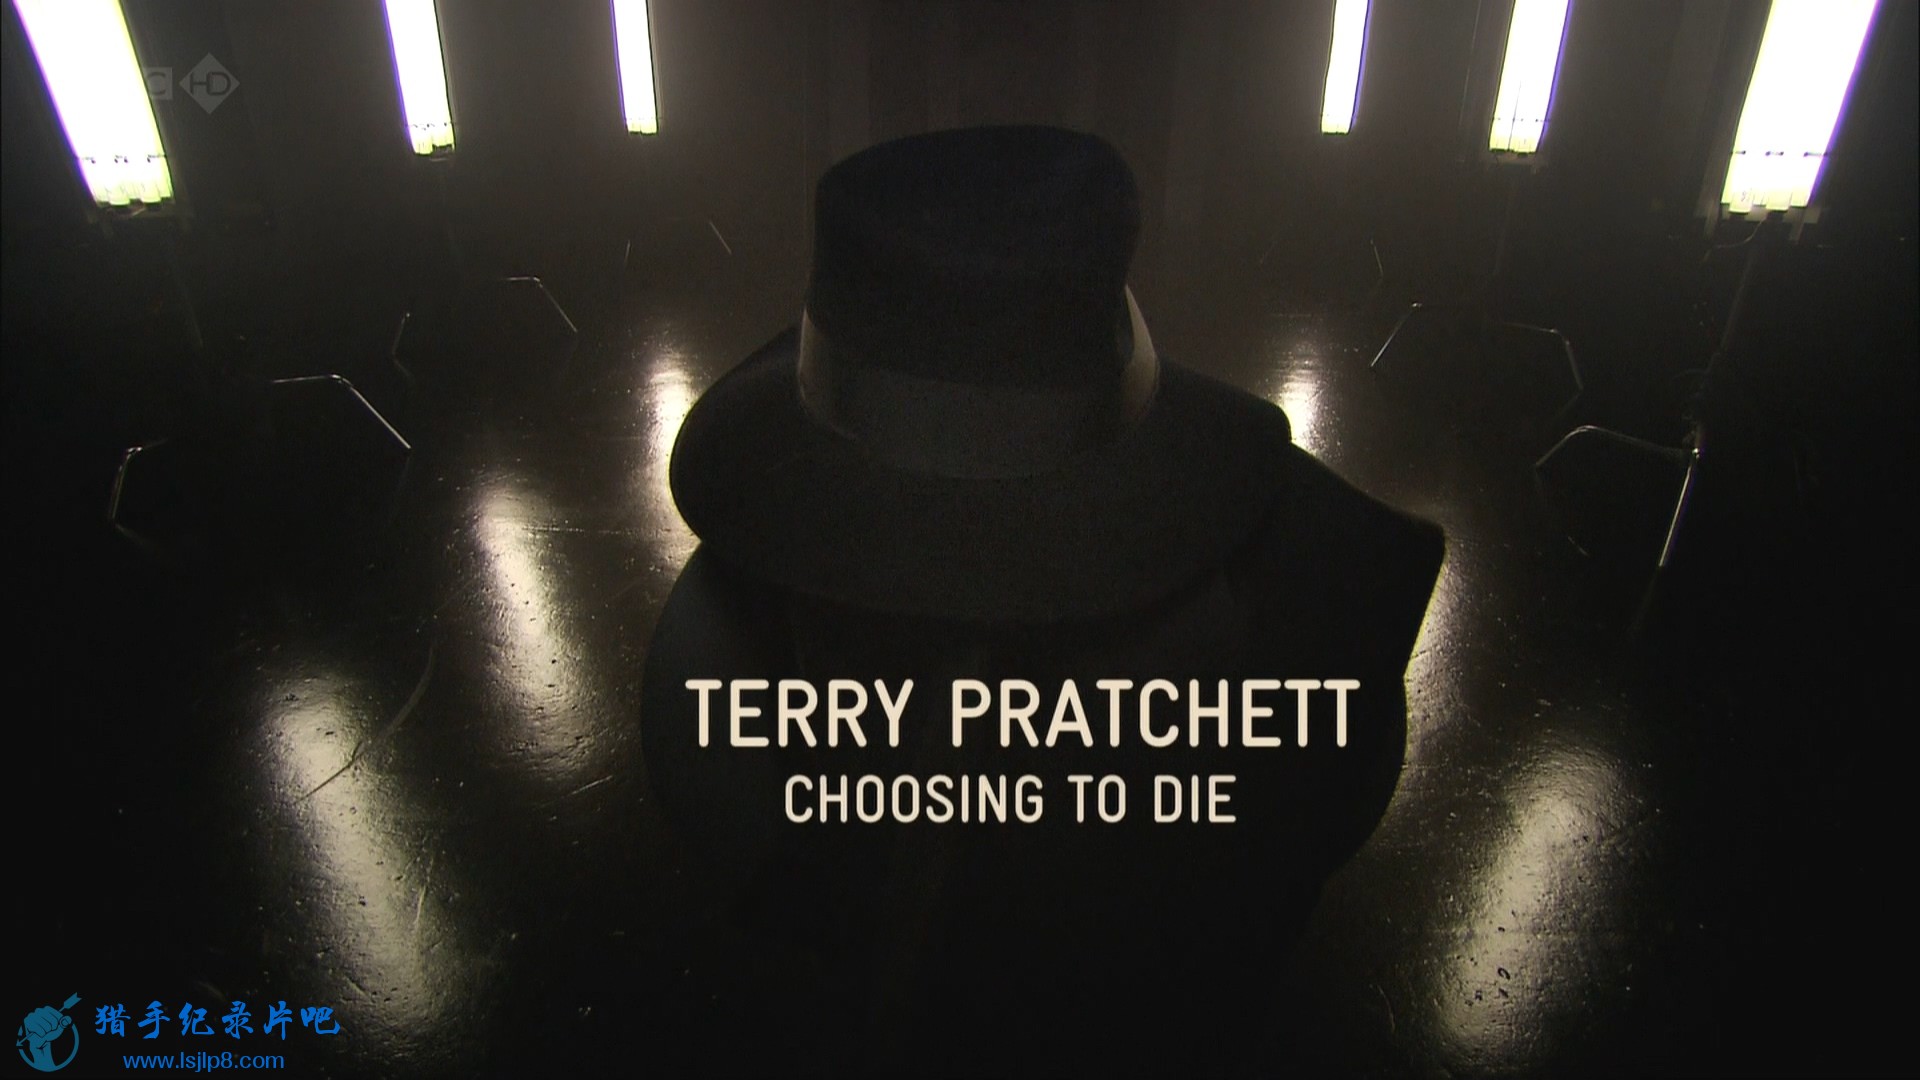 BBC.Terry.Pratchett.Choosing.to.Die.1080i.HDTV.MVGroup.mkv_20190930_091034.805.jpg